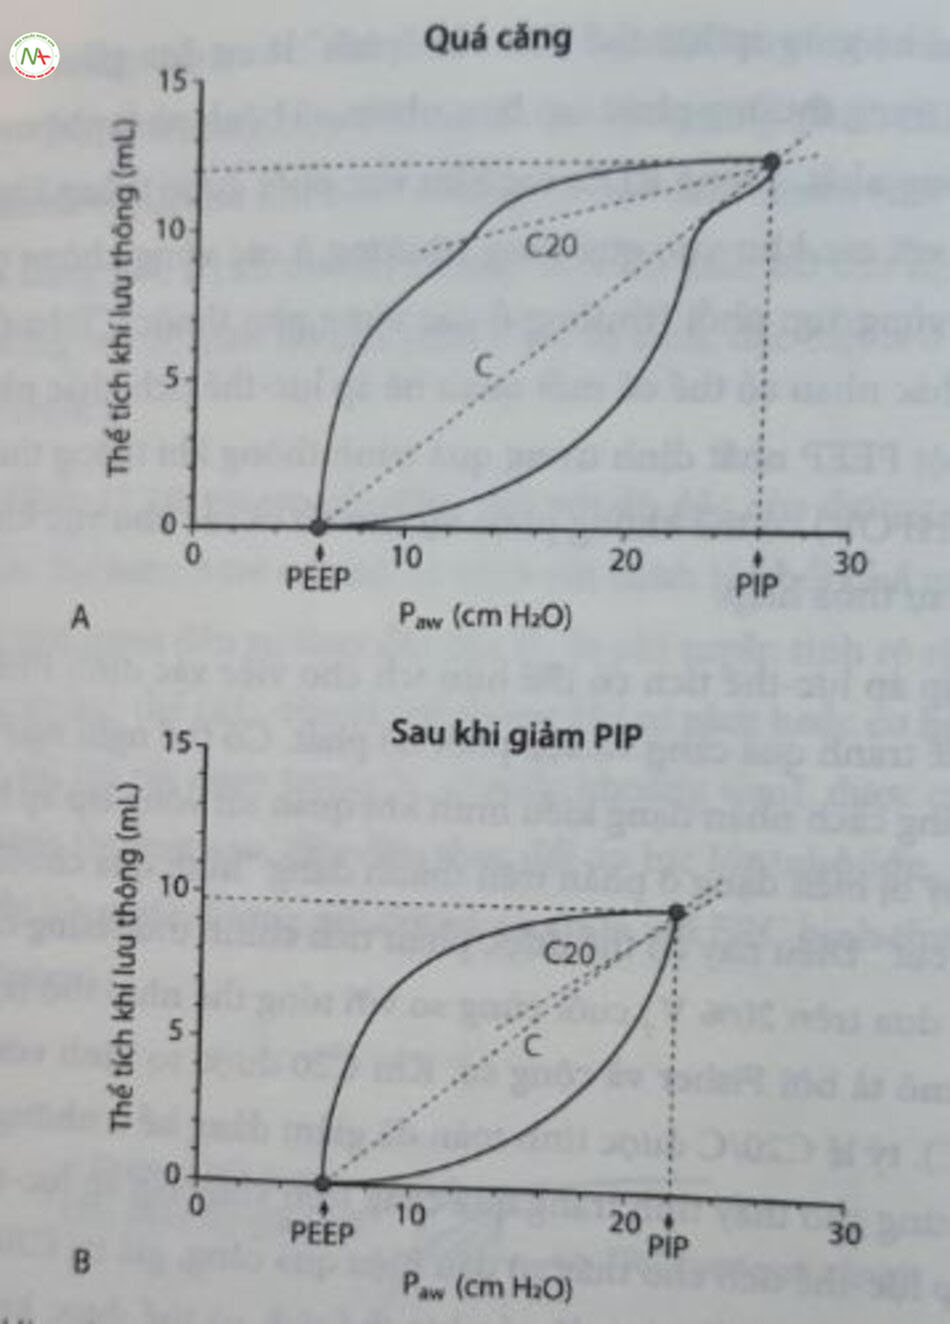 Hình 12,21 Vòng lặp áp lực-thể tích với bằng chứng về quá căng. Vòng lặp A cho thấy bằng chứng về tình trạng quá căng với phần cuối cùng của vòng lặp phẳng dẹt. Sau khi giảm phân dẹt của PIP, vòng lặp áp lực thể tích đã (gần như) biến mất. (A) Quá căng. (B) Sau khi giảm PIP. P... áp lực đường thở; PEEP, áp lực dương cuối thì thở ra; PIP, áp lực bơm phòng định